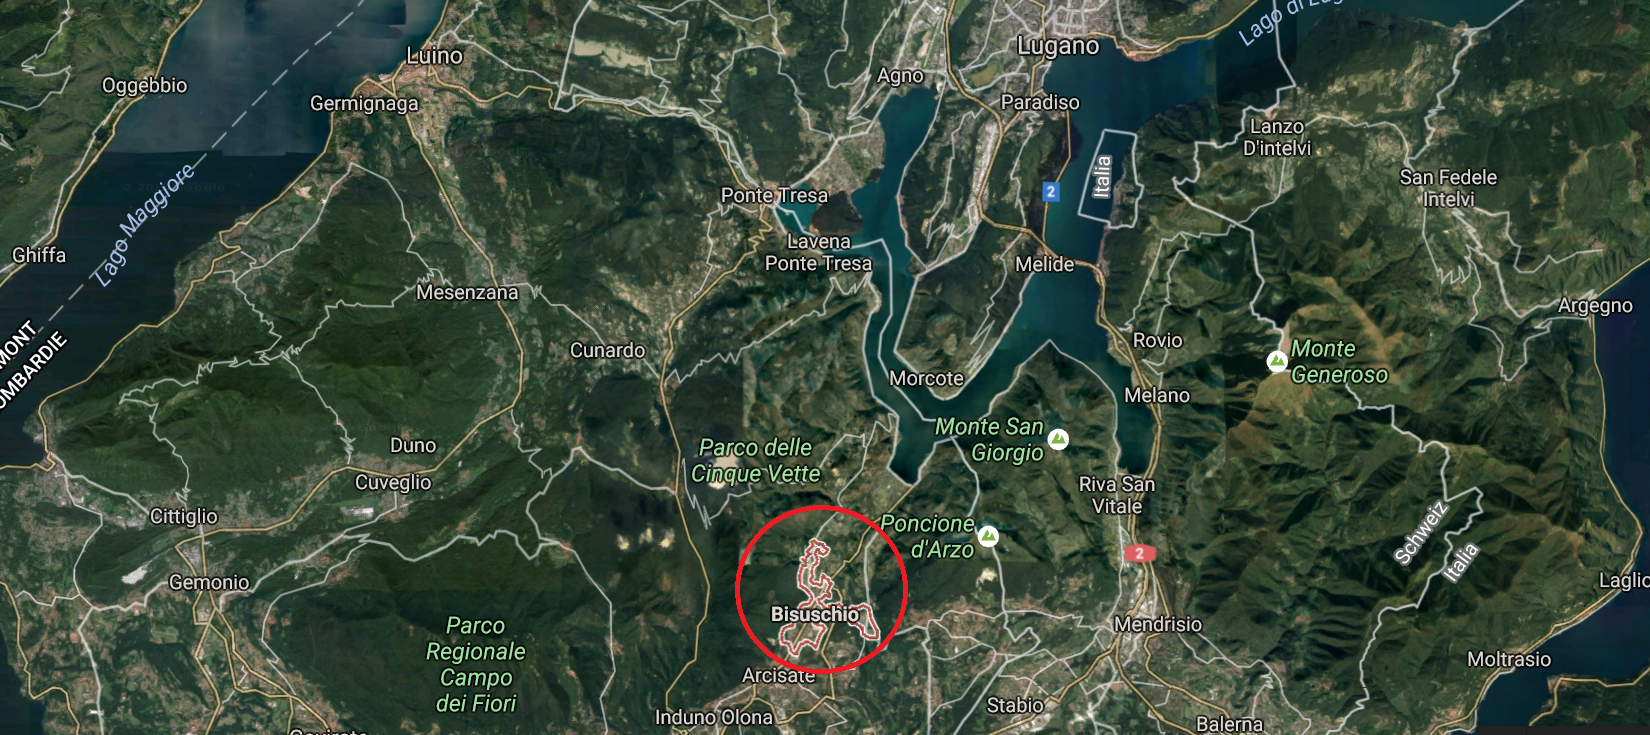 L'appareil s'est écrasé à quelques kilomètres de la frontière suisse.